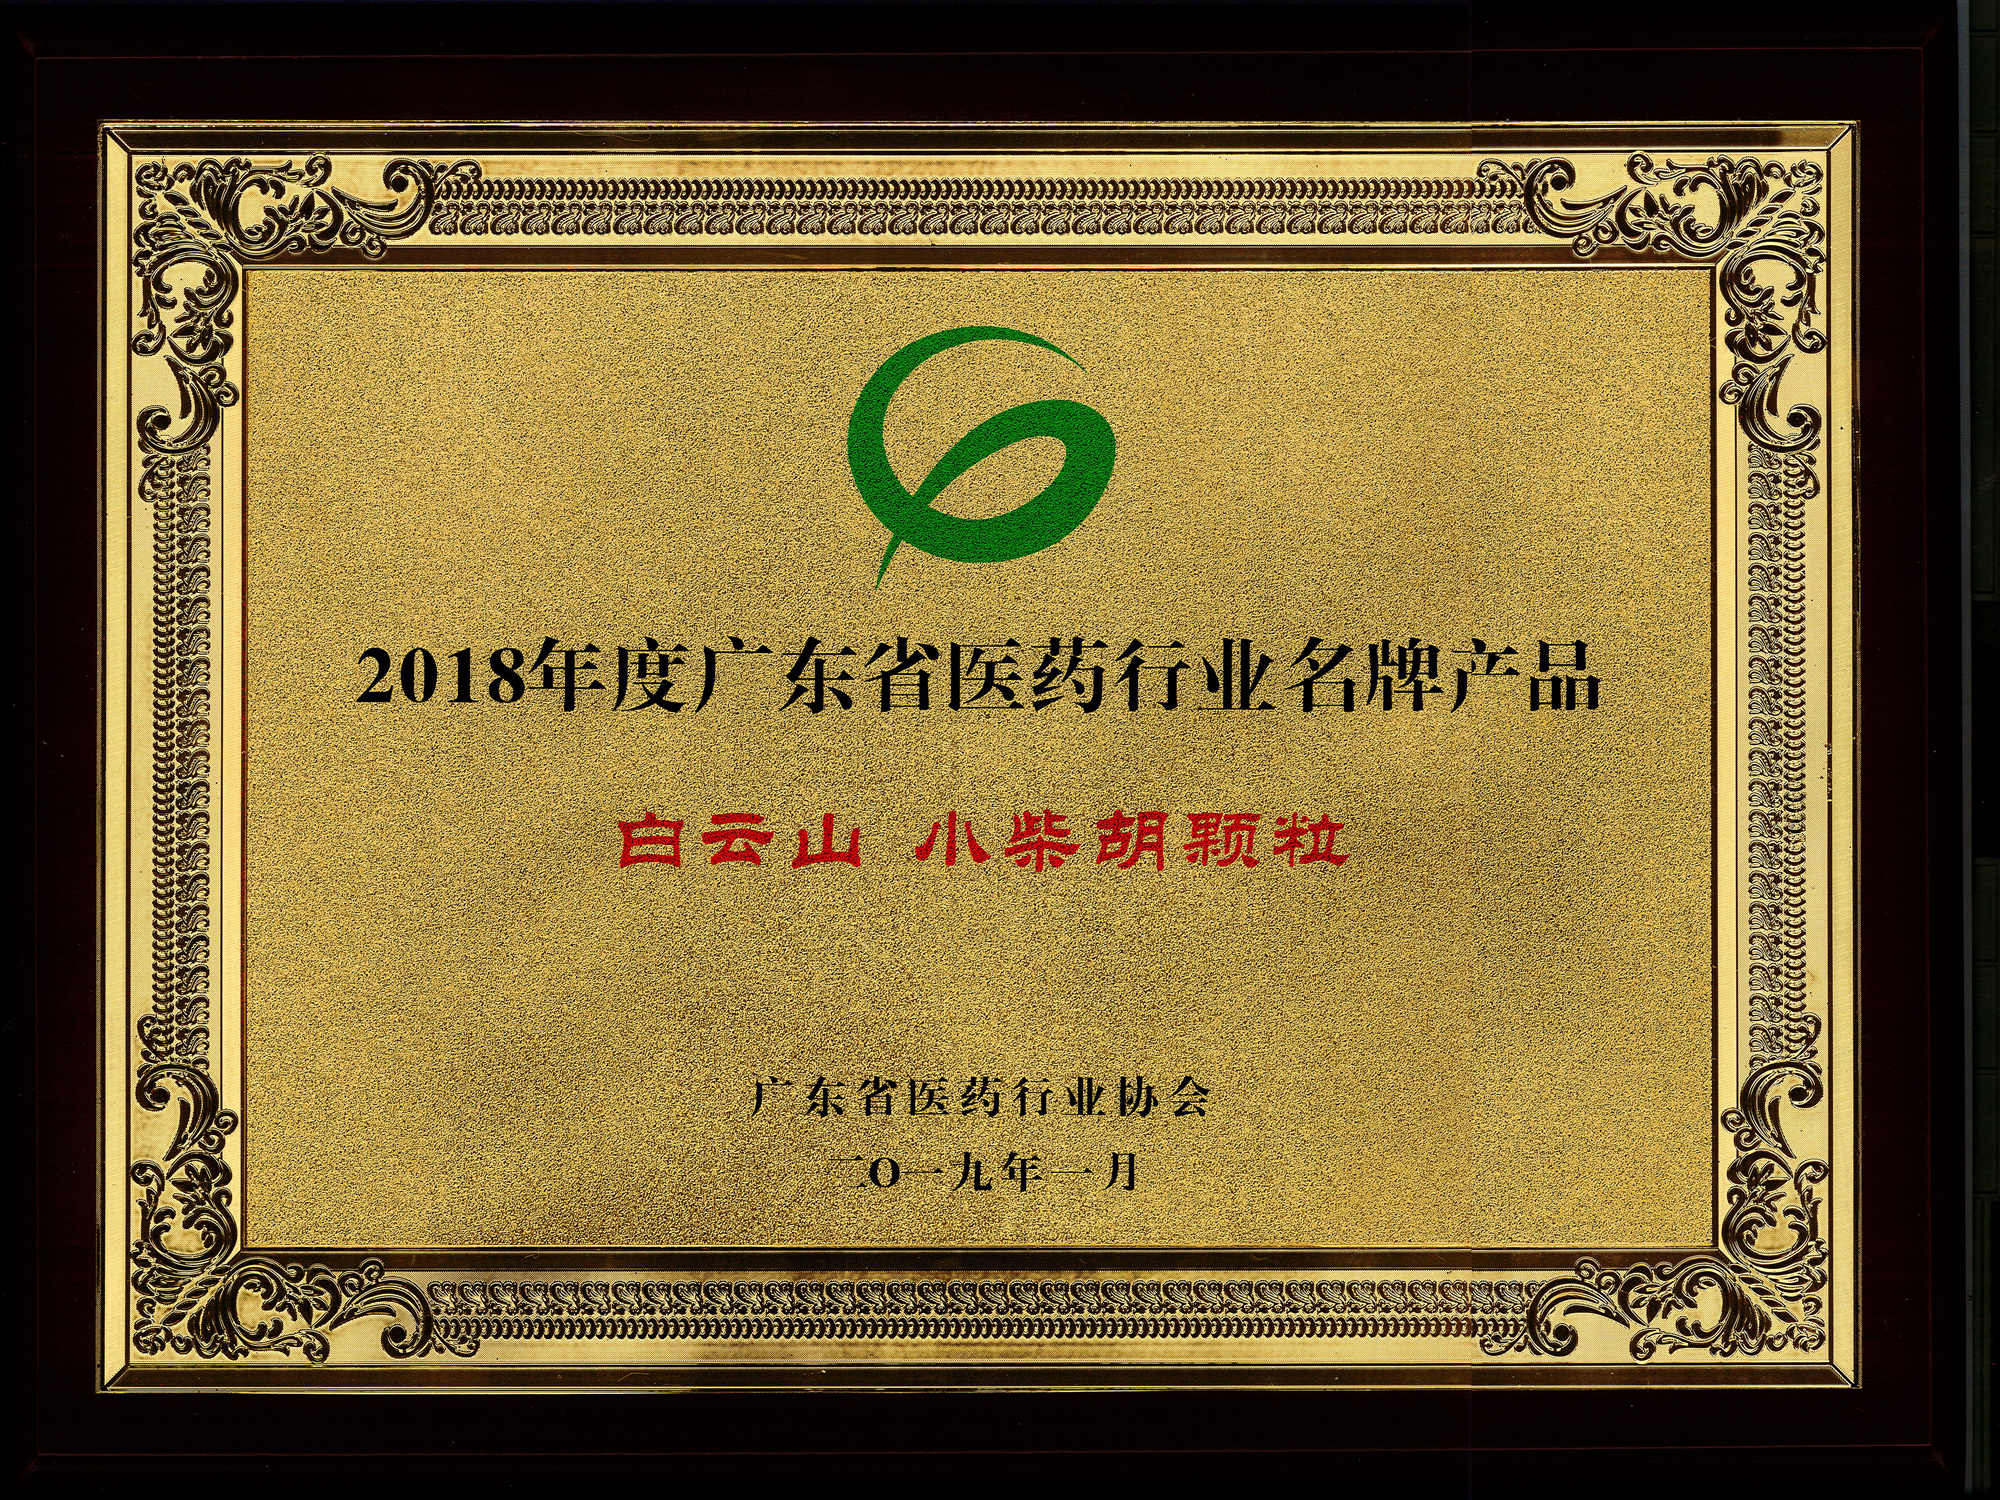 2018年度廣東省醫藥行業名牌產品